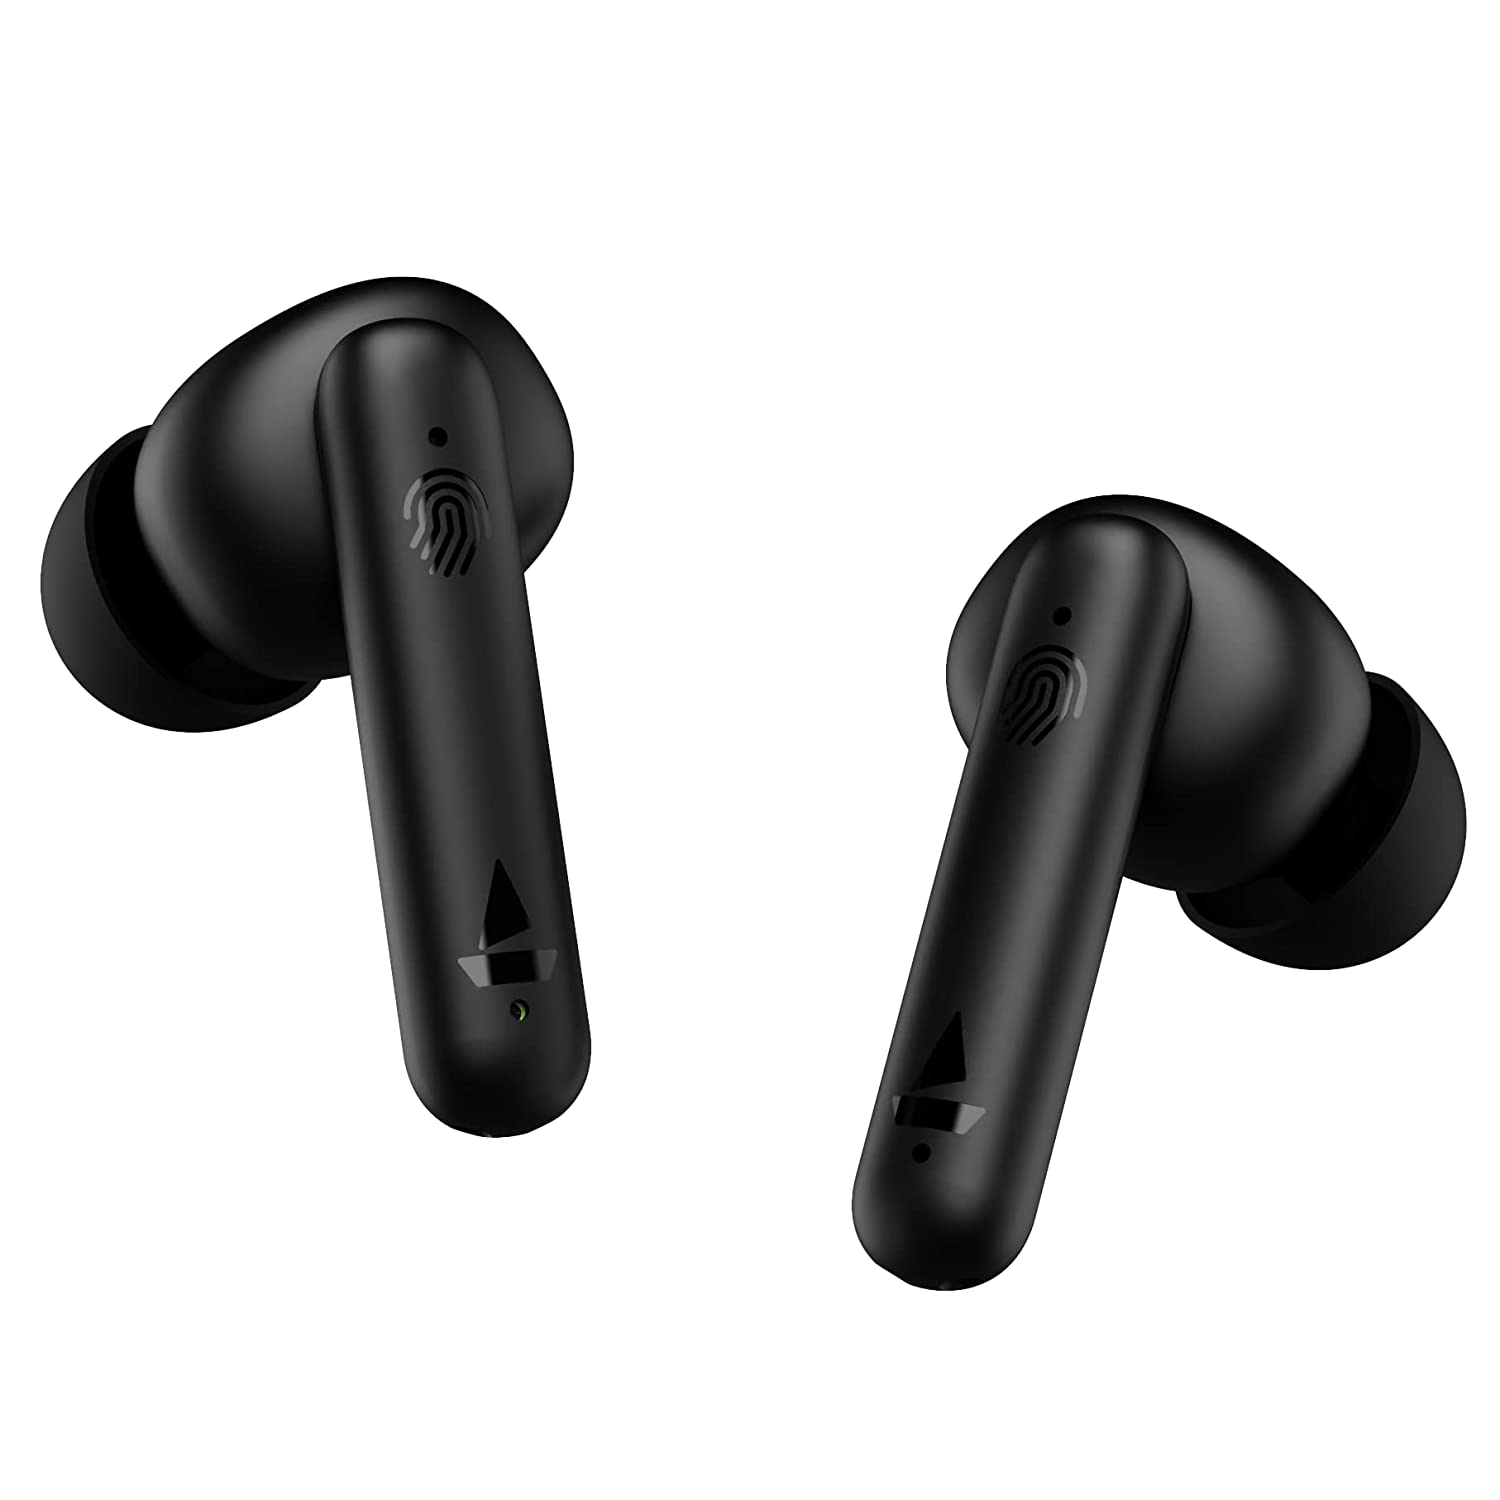 Best Earbuds under 1500 | top 10 earbuds 2022 under 1500